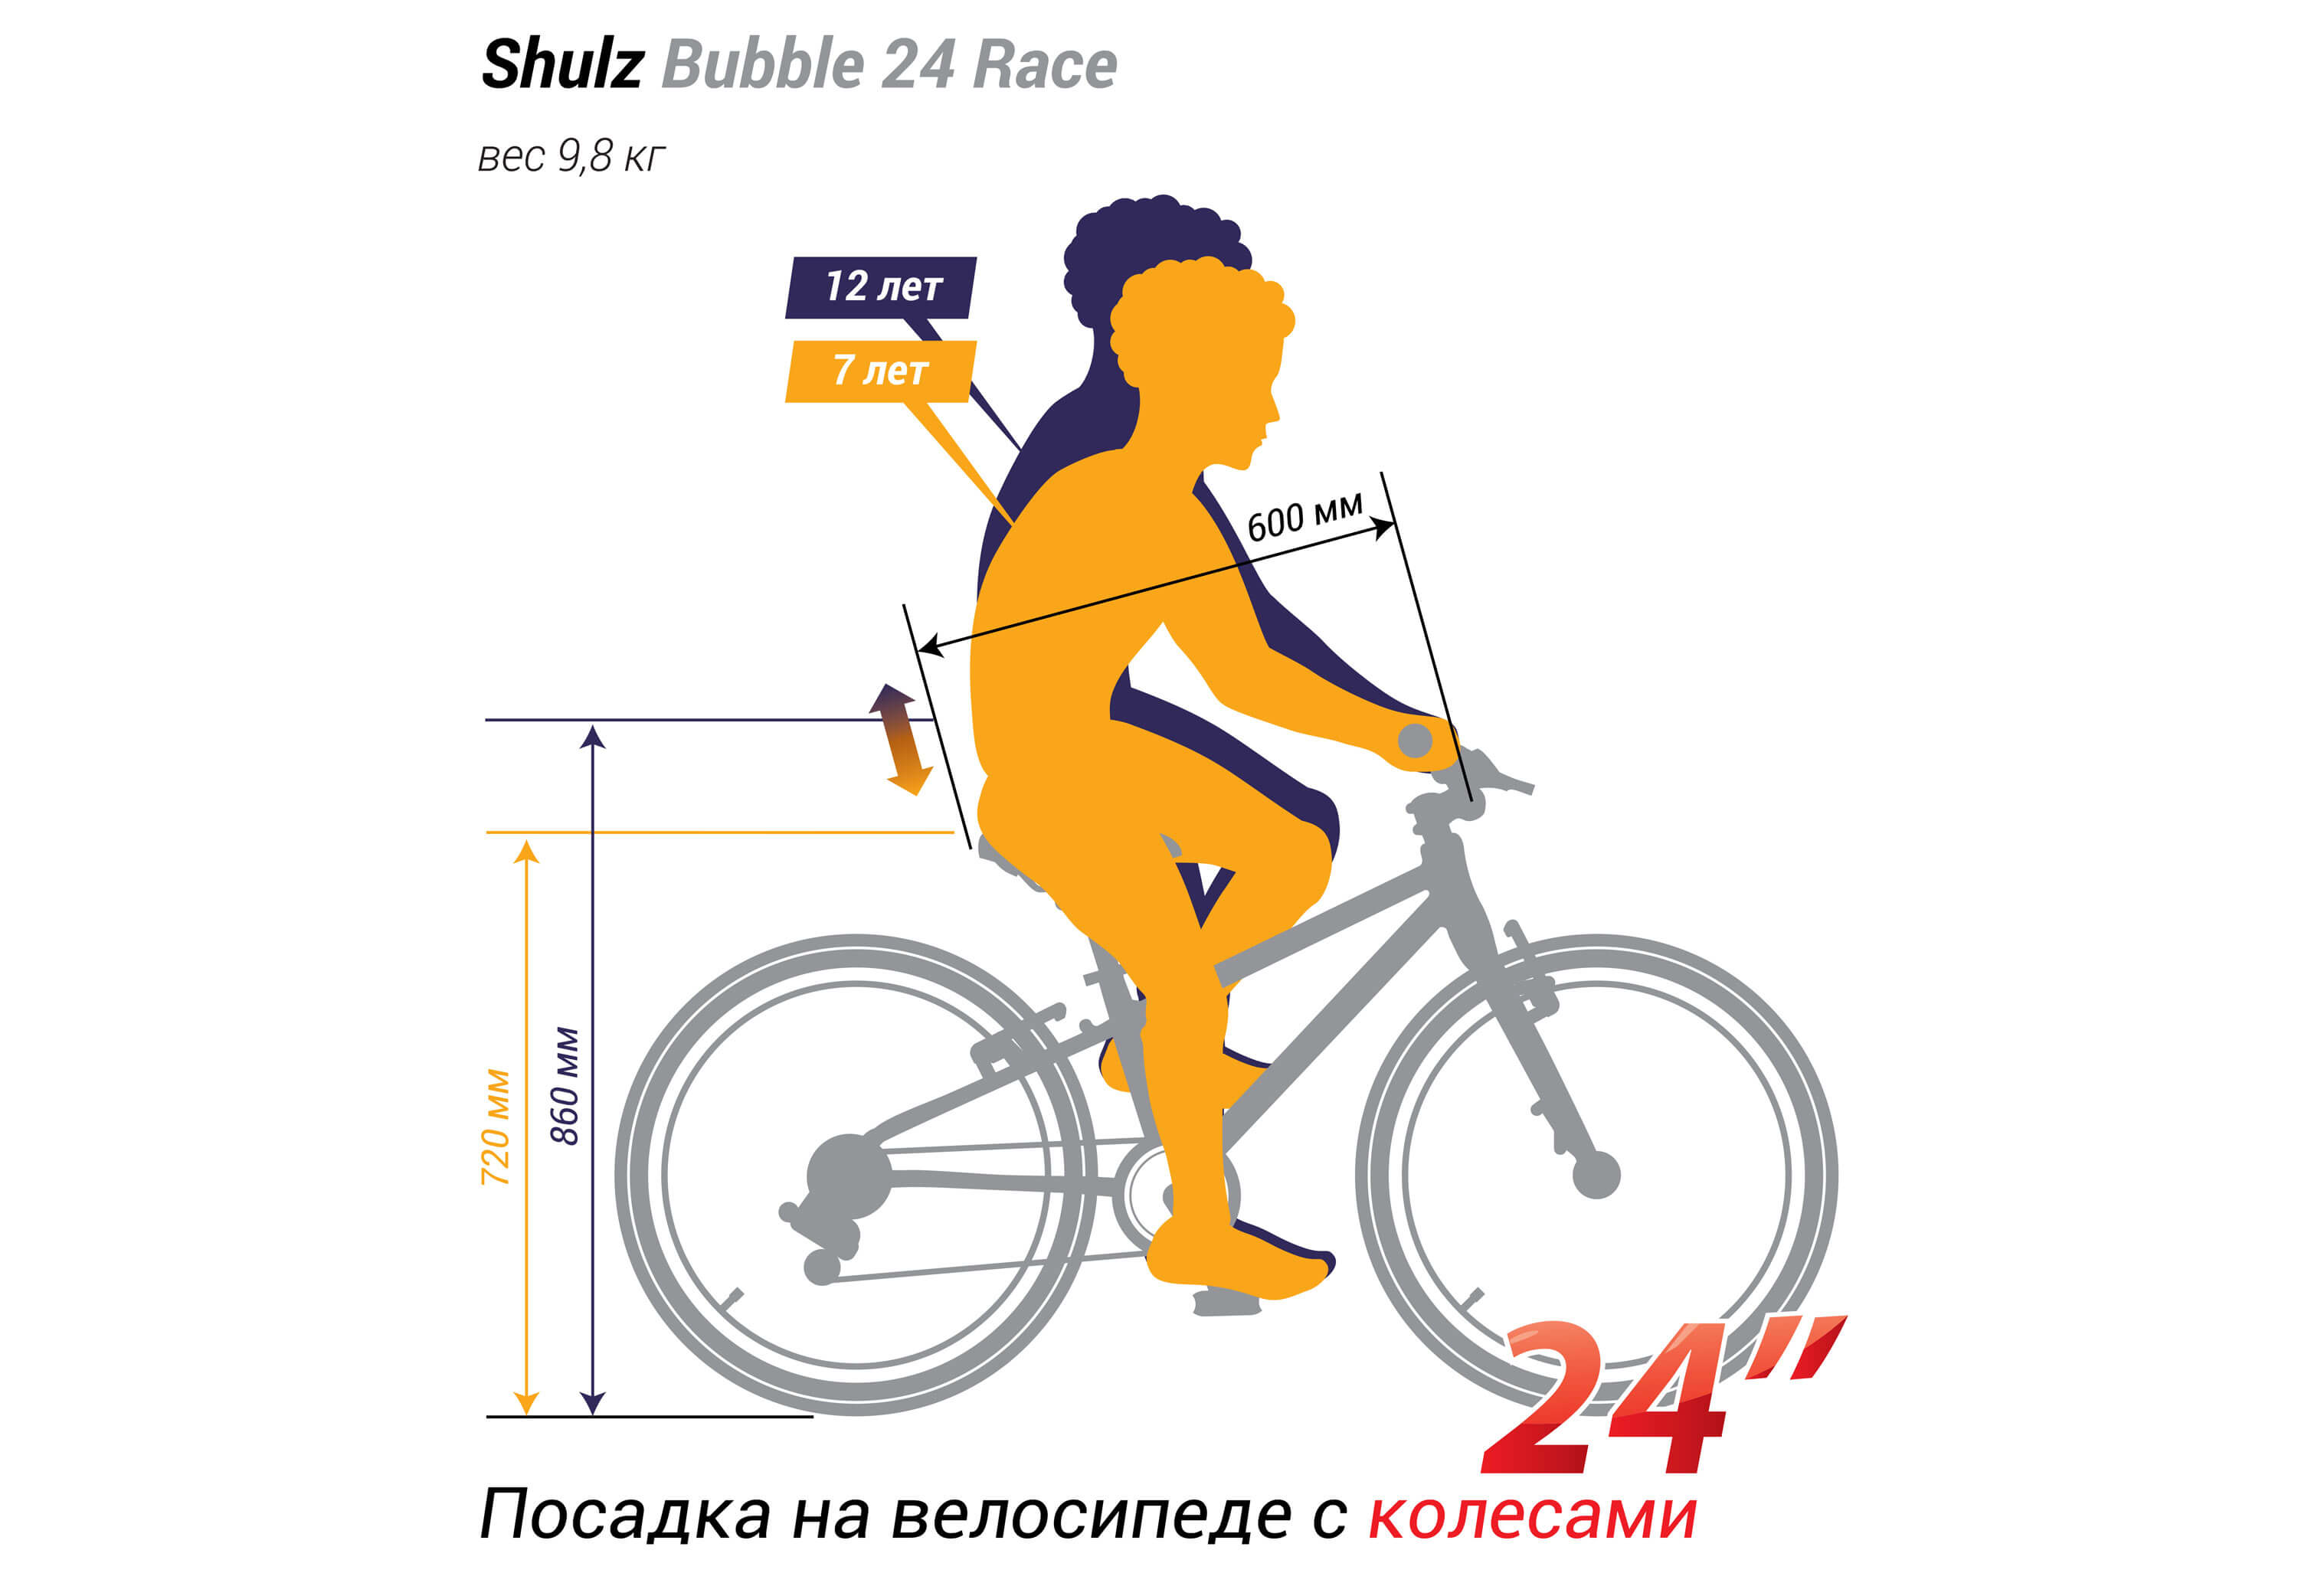 Shulz Bubble 24 Race